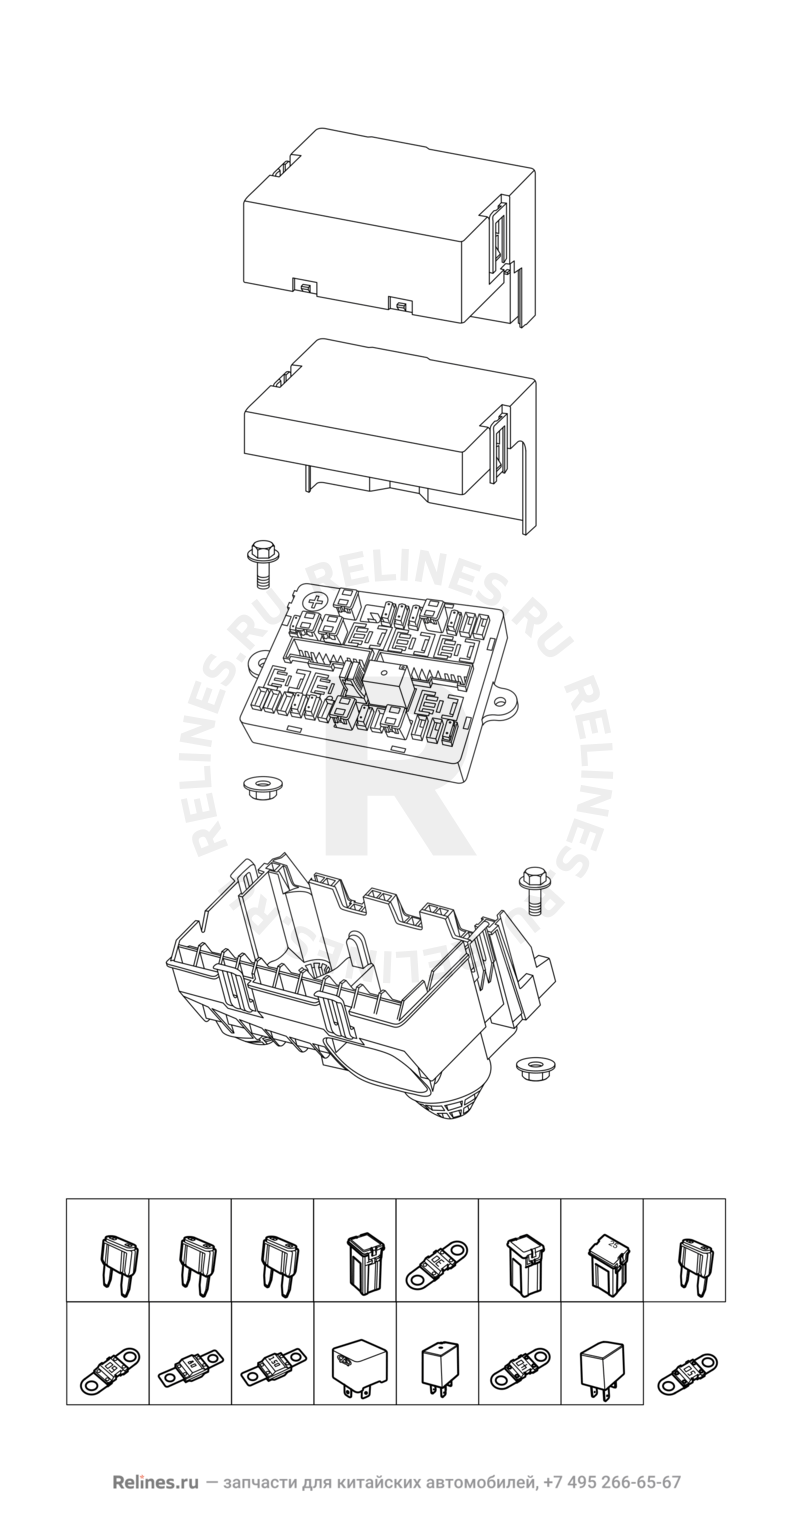 Запчасти Chery Tiggo 5 Поколение I (2013)  — Проводка кузова (2) — схема